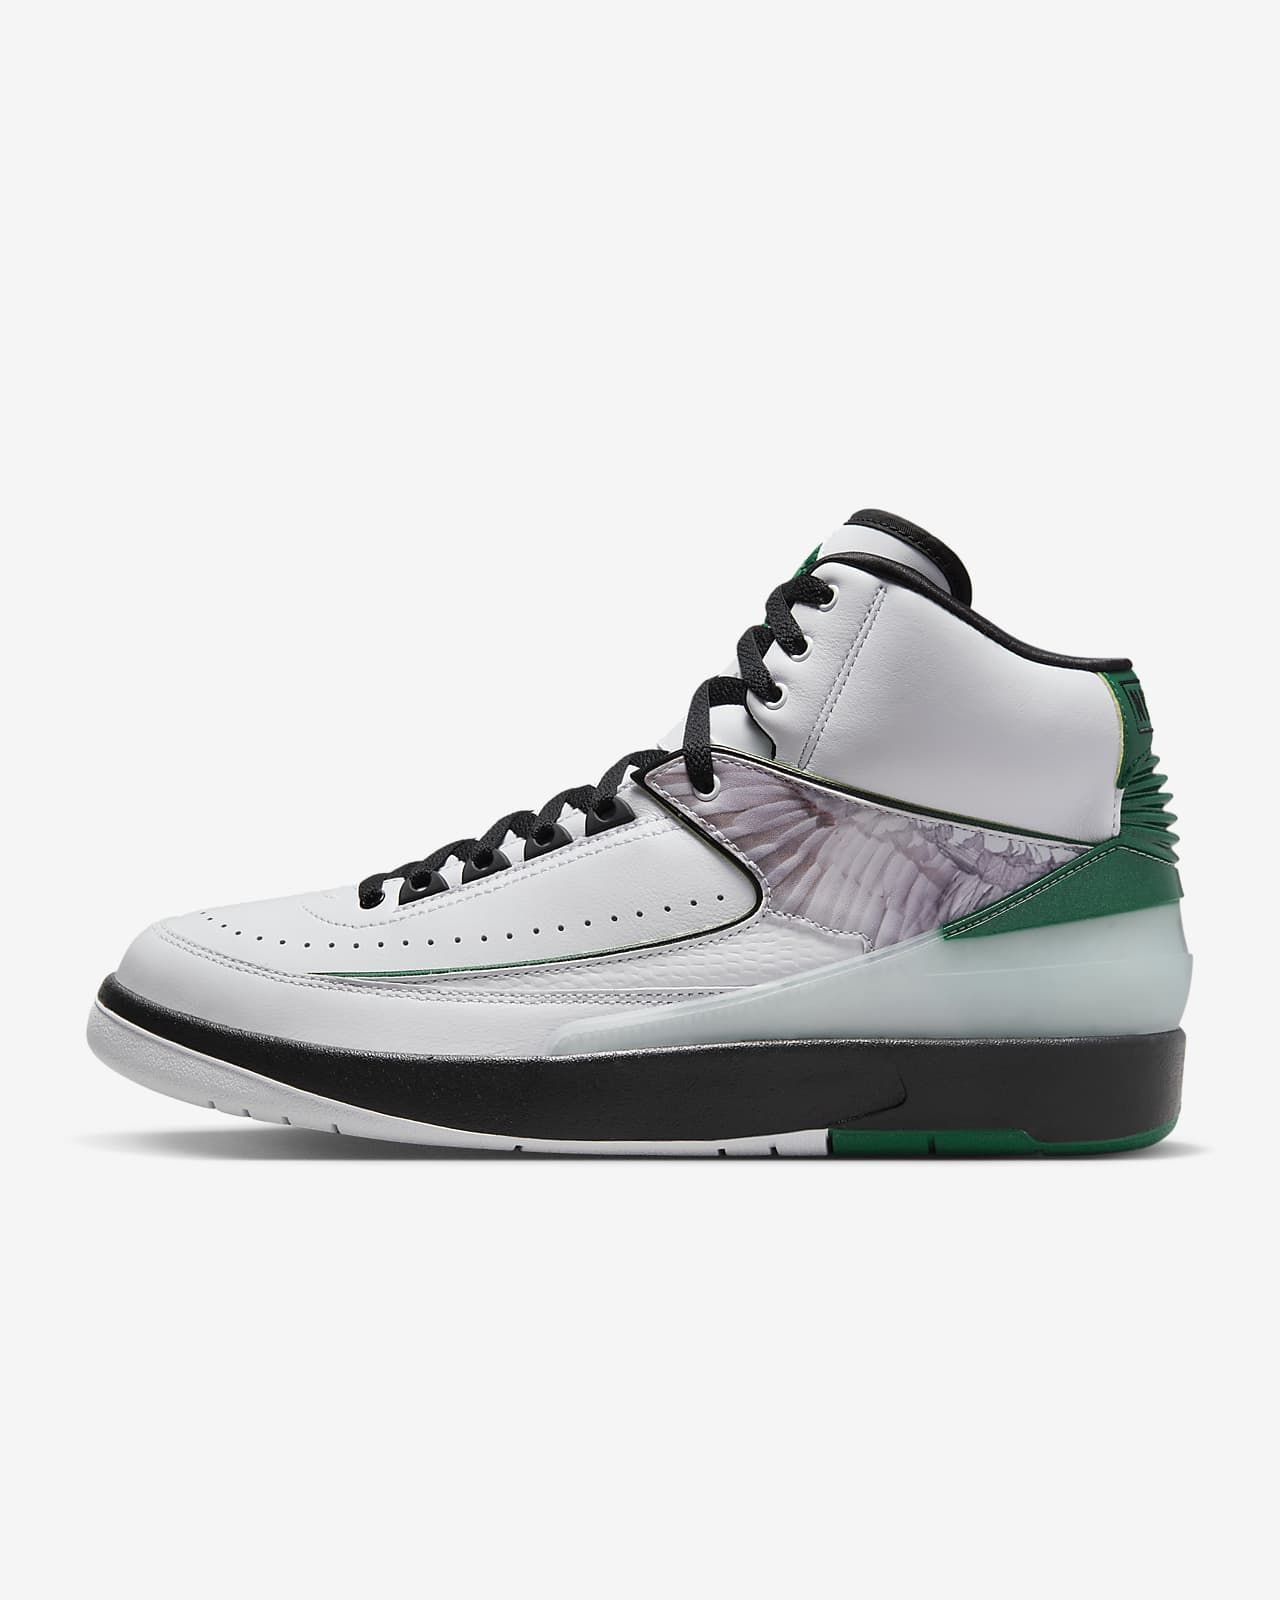 Air Jordan 2 Retro “H” Wings Men's Shoes. Nike.com | Nike (US)